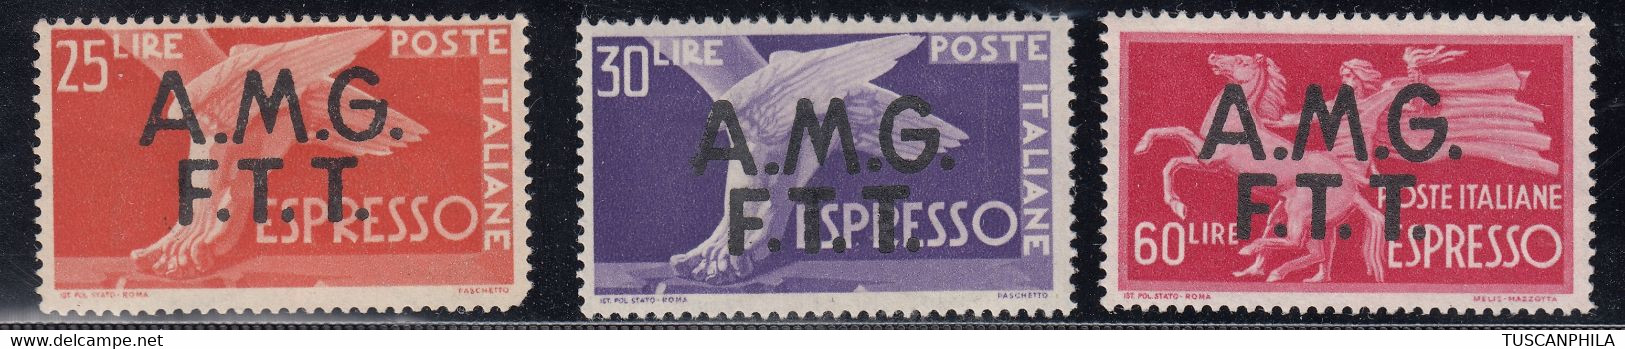 Trieste AMG-FTT Espressi Sass. 2/4 MNH** Cv. 300 - Posta Espresso